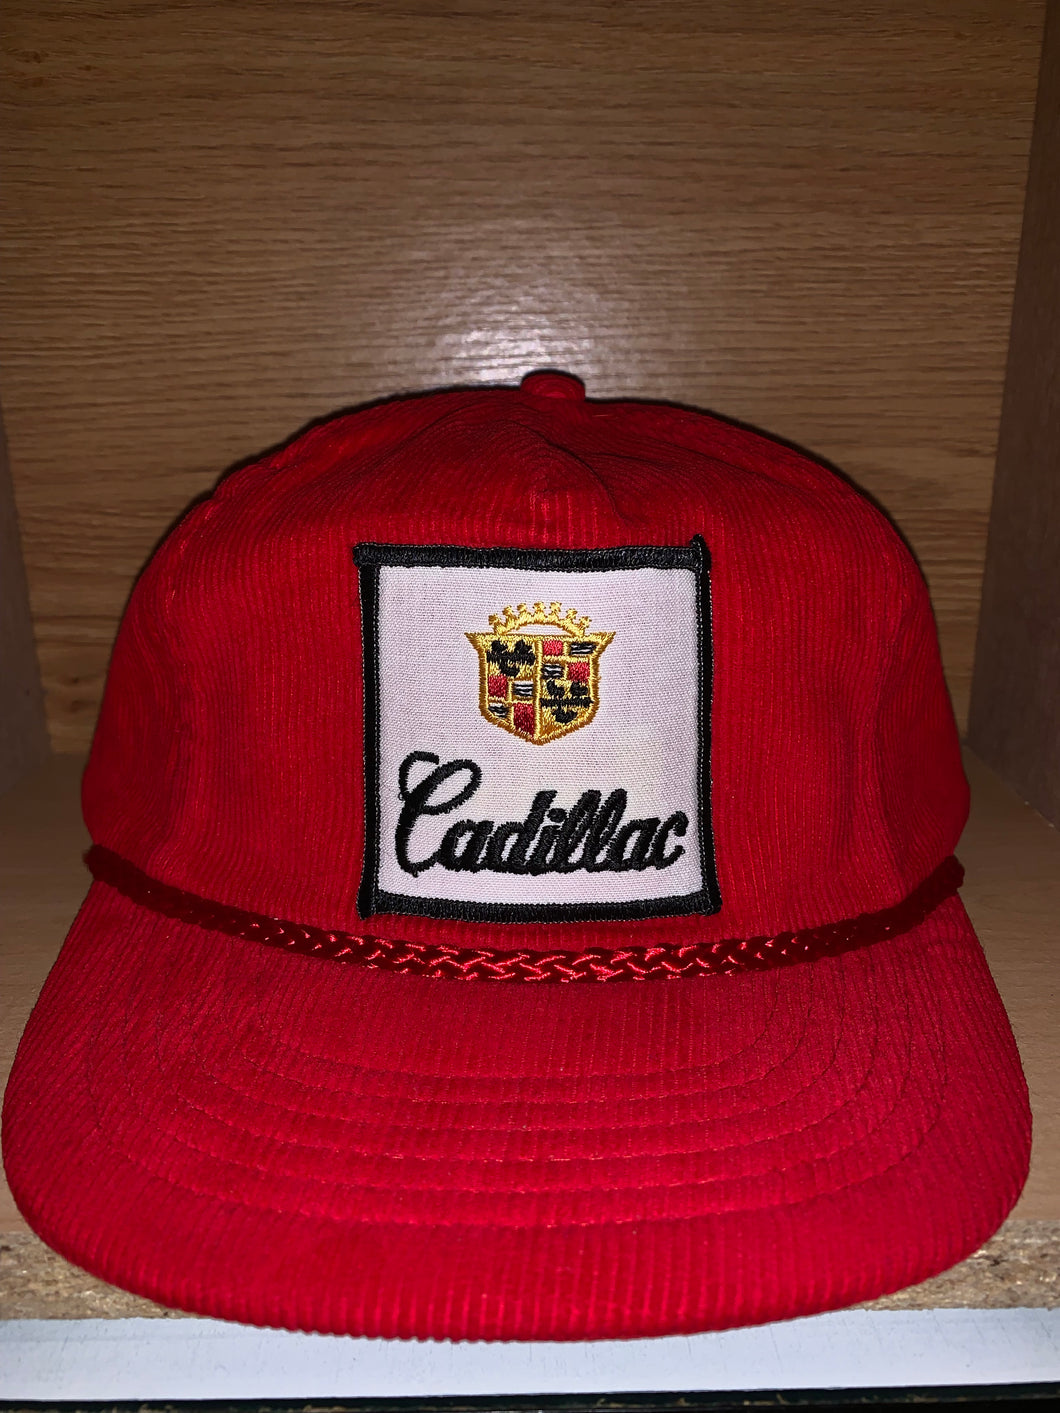 Vintage Corduroy Cadillac Hat